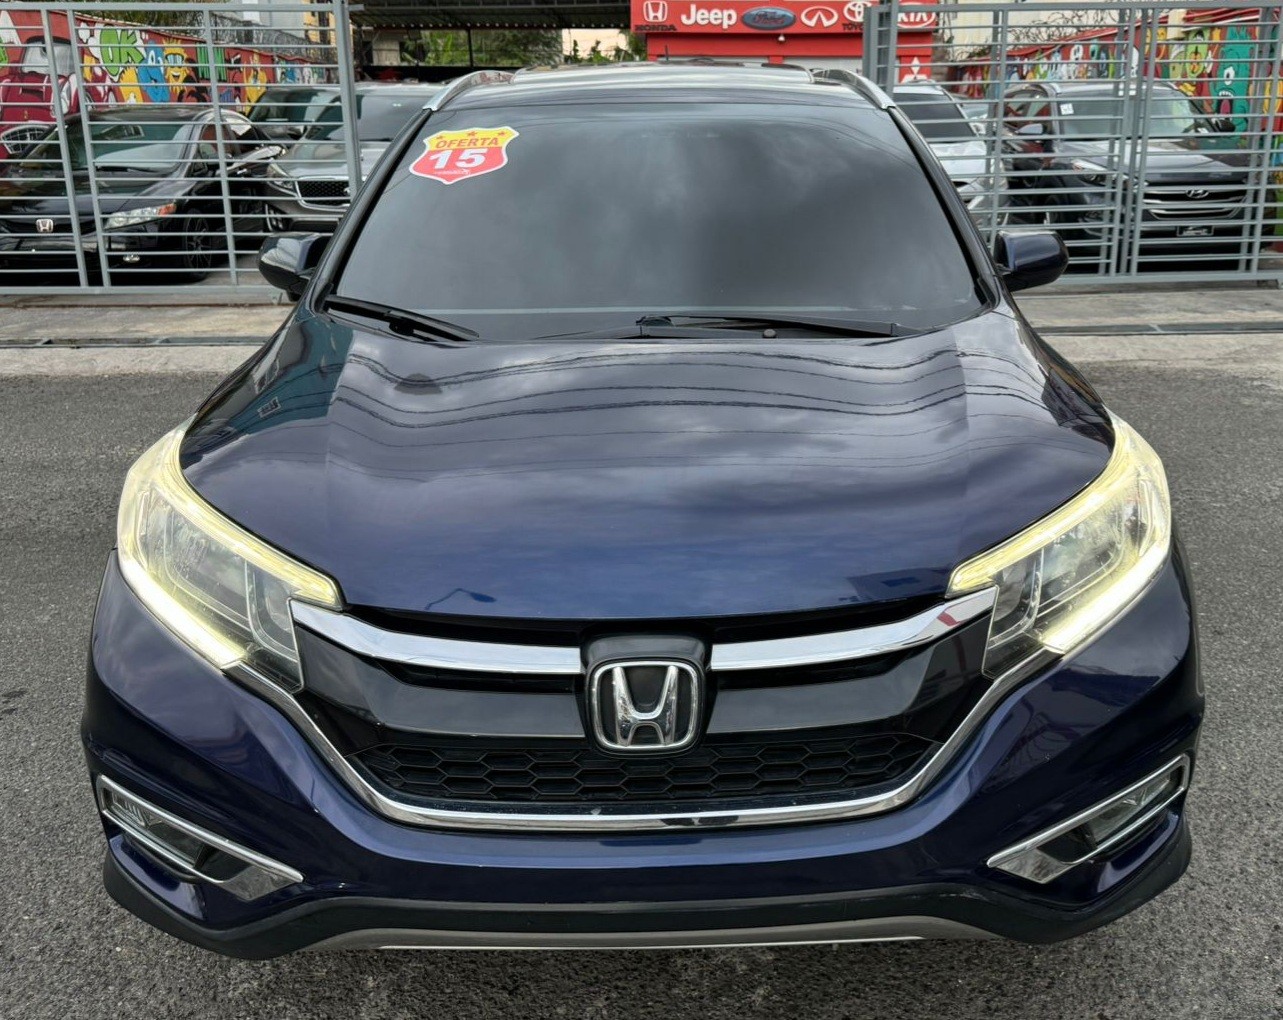 jeepetas y camionetas - Honda CRV EXL 2015 4x4, lether, soonruff, 56,772 millas originales 5